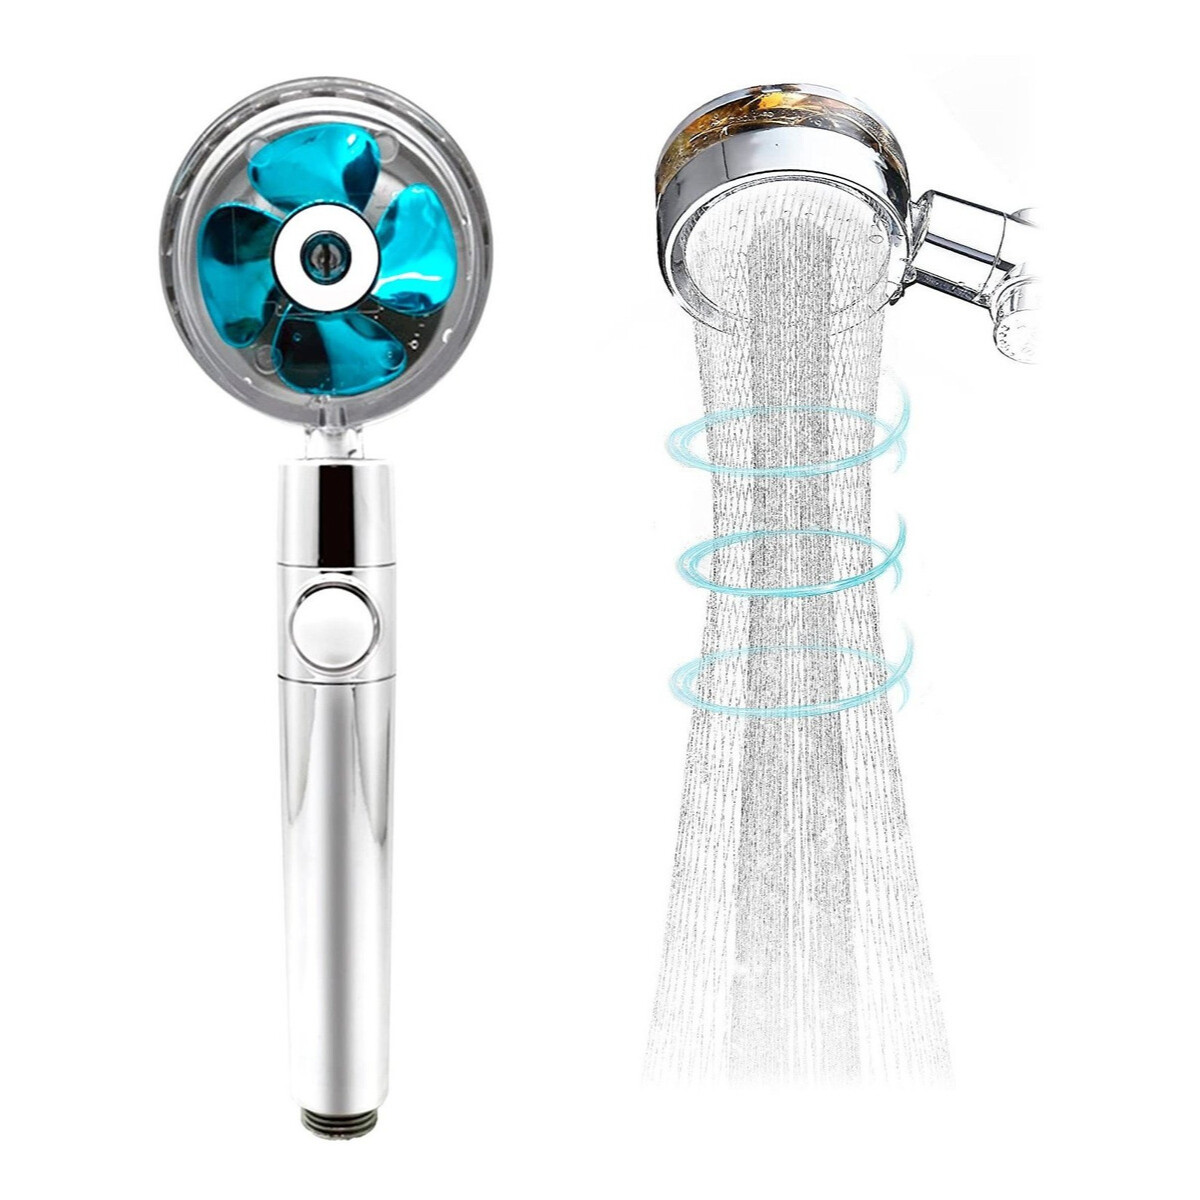 Cabezal de ducha de mano de alta presión con filtros y perilla de ajuste,  ventilador azul giratorio de 360°, cabezal de ducha de hidrochet, fácil de